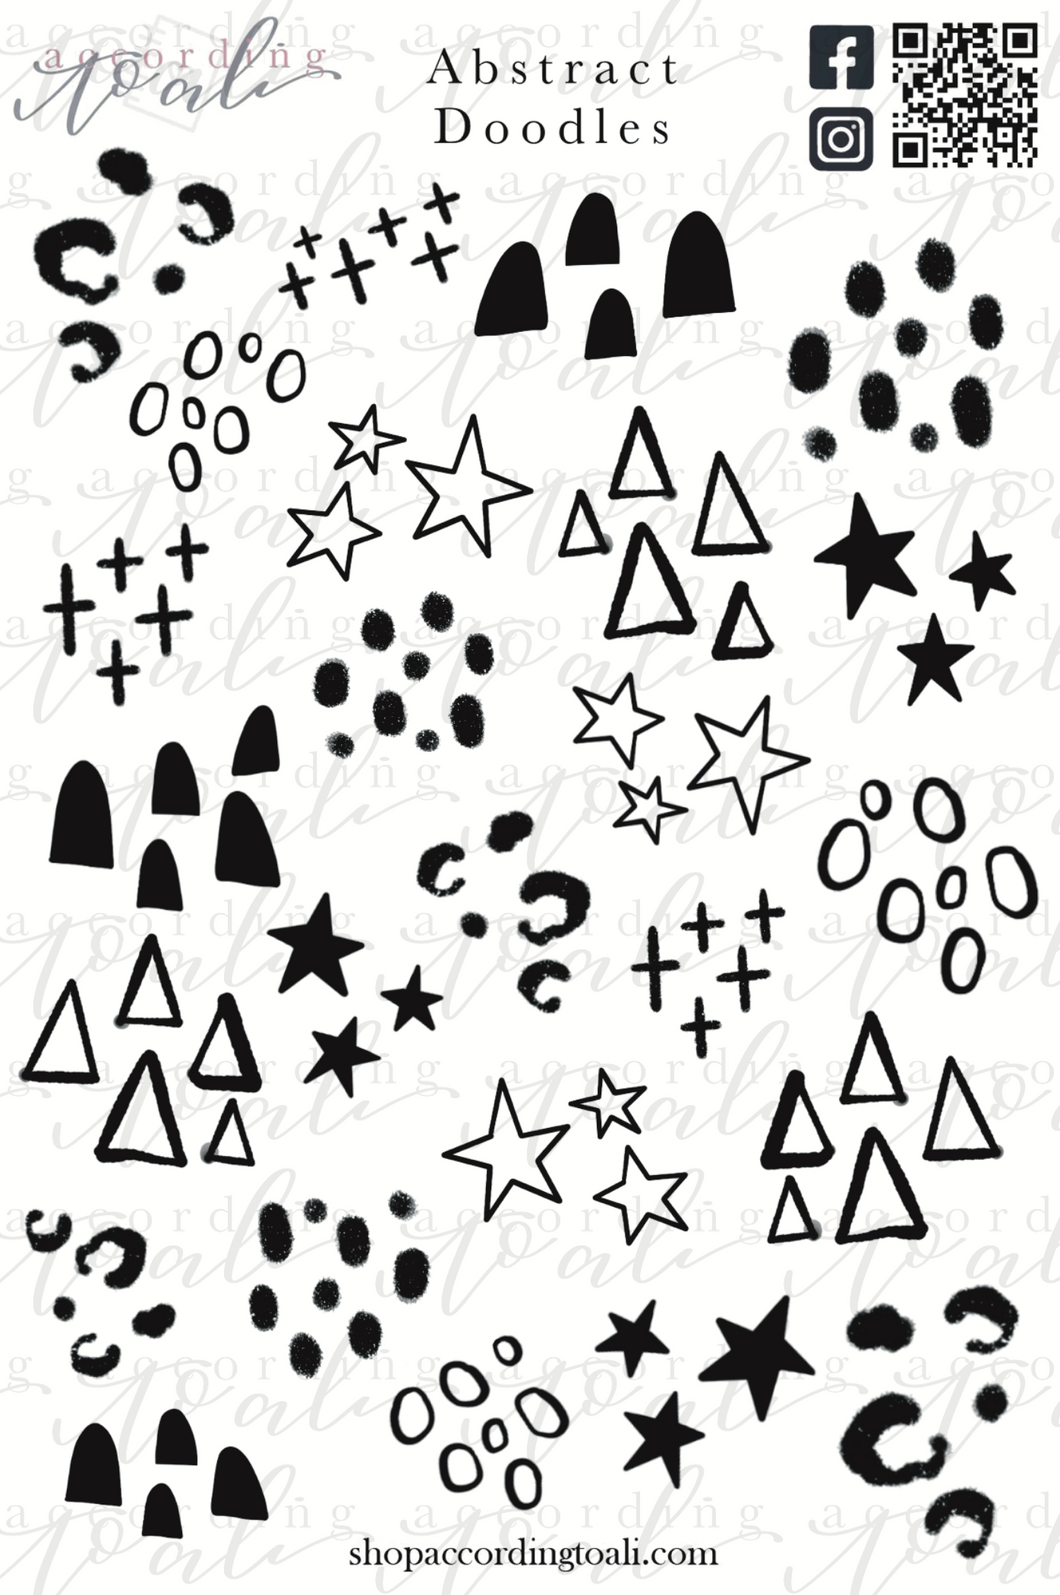 Abstract Doodles Sticker Sheet